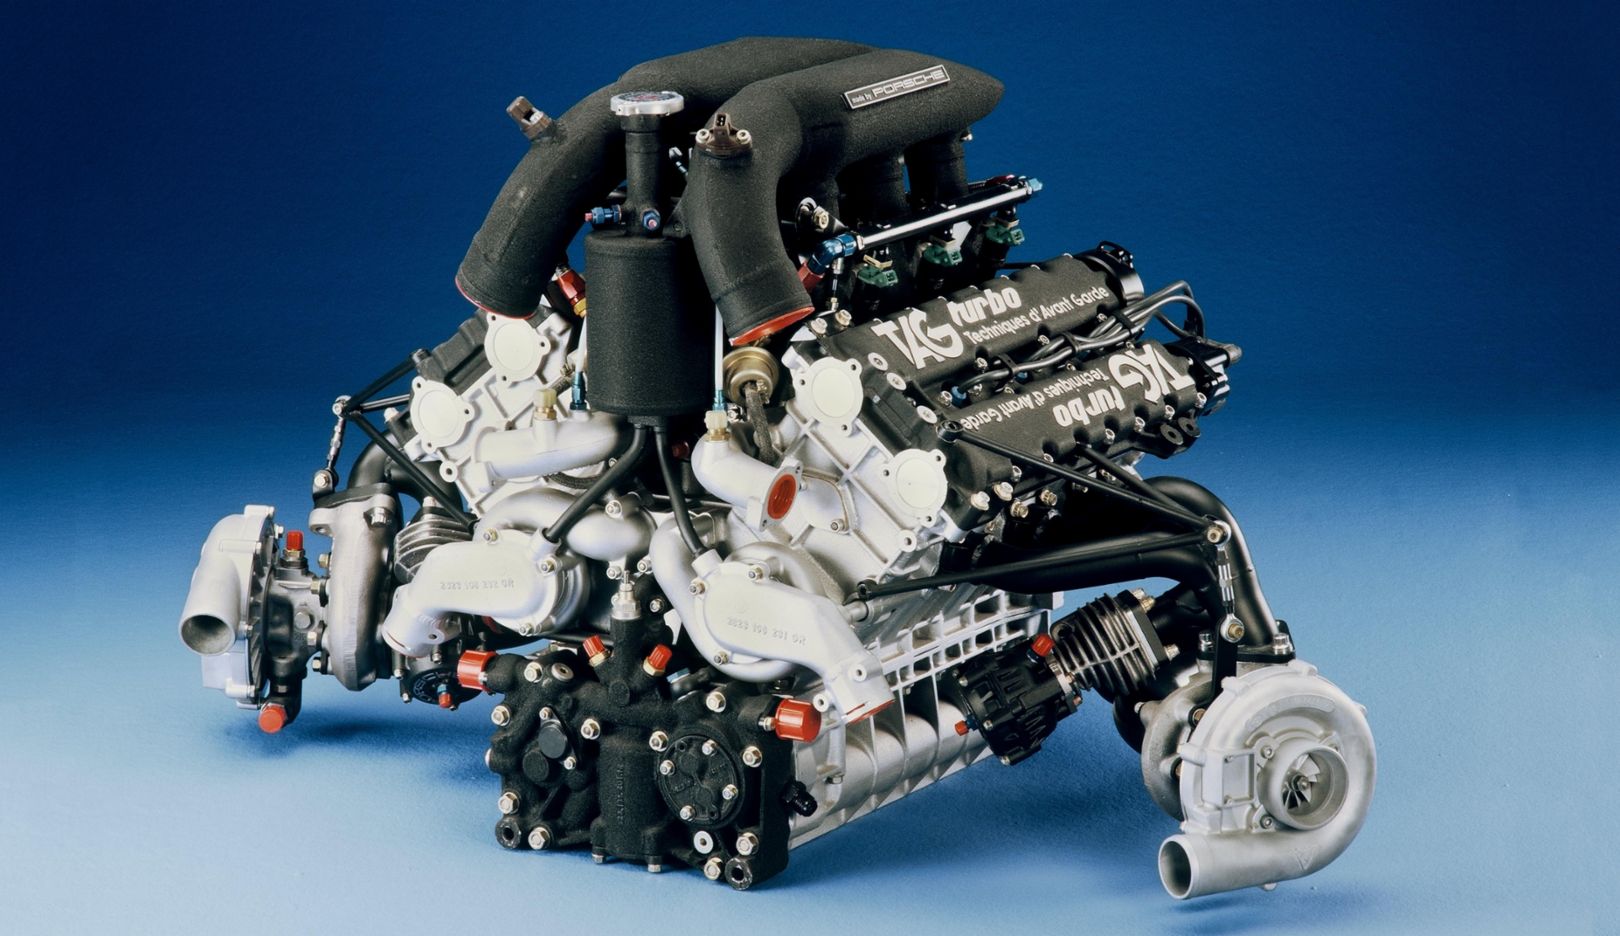 1983 – Formel-1-Motor für McLaren: Der TAG­Turbo-Motor für den McLaren MP4 mit 1,5 Litern Hubraum und bis zu 1.000 PS Leistung sorgt für drei Fahrer-  und zwei Konstrukteursweltmeisterschaftstitel in der Formel 1.